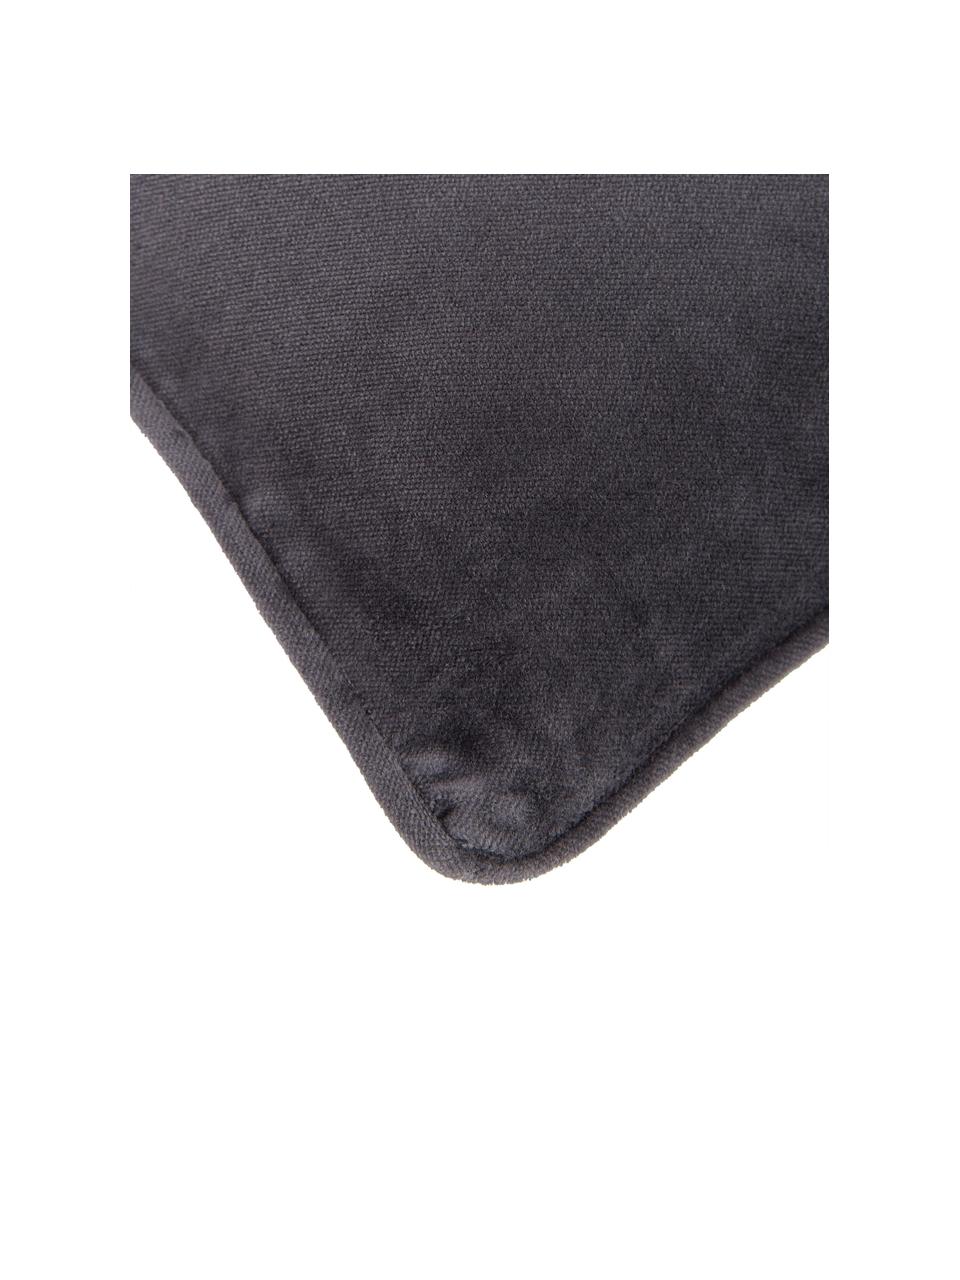 Poszewka na poduszkę z aksamitu Dana, 100% aksamit bawełniany, Antracytowy, S 50 x D 50 cm